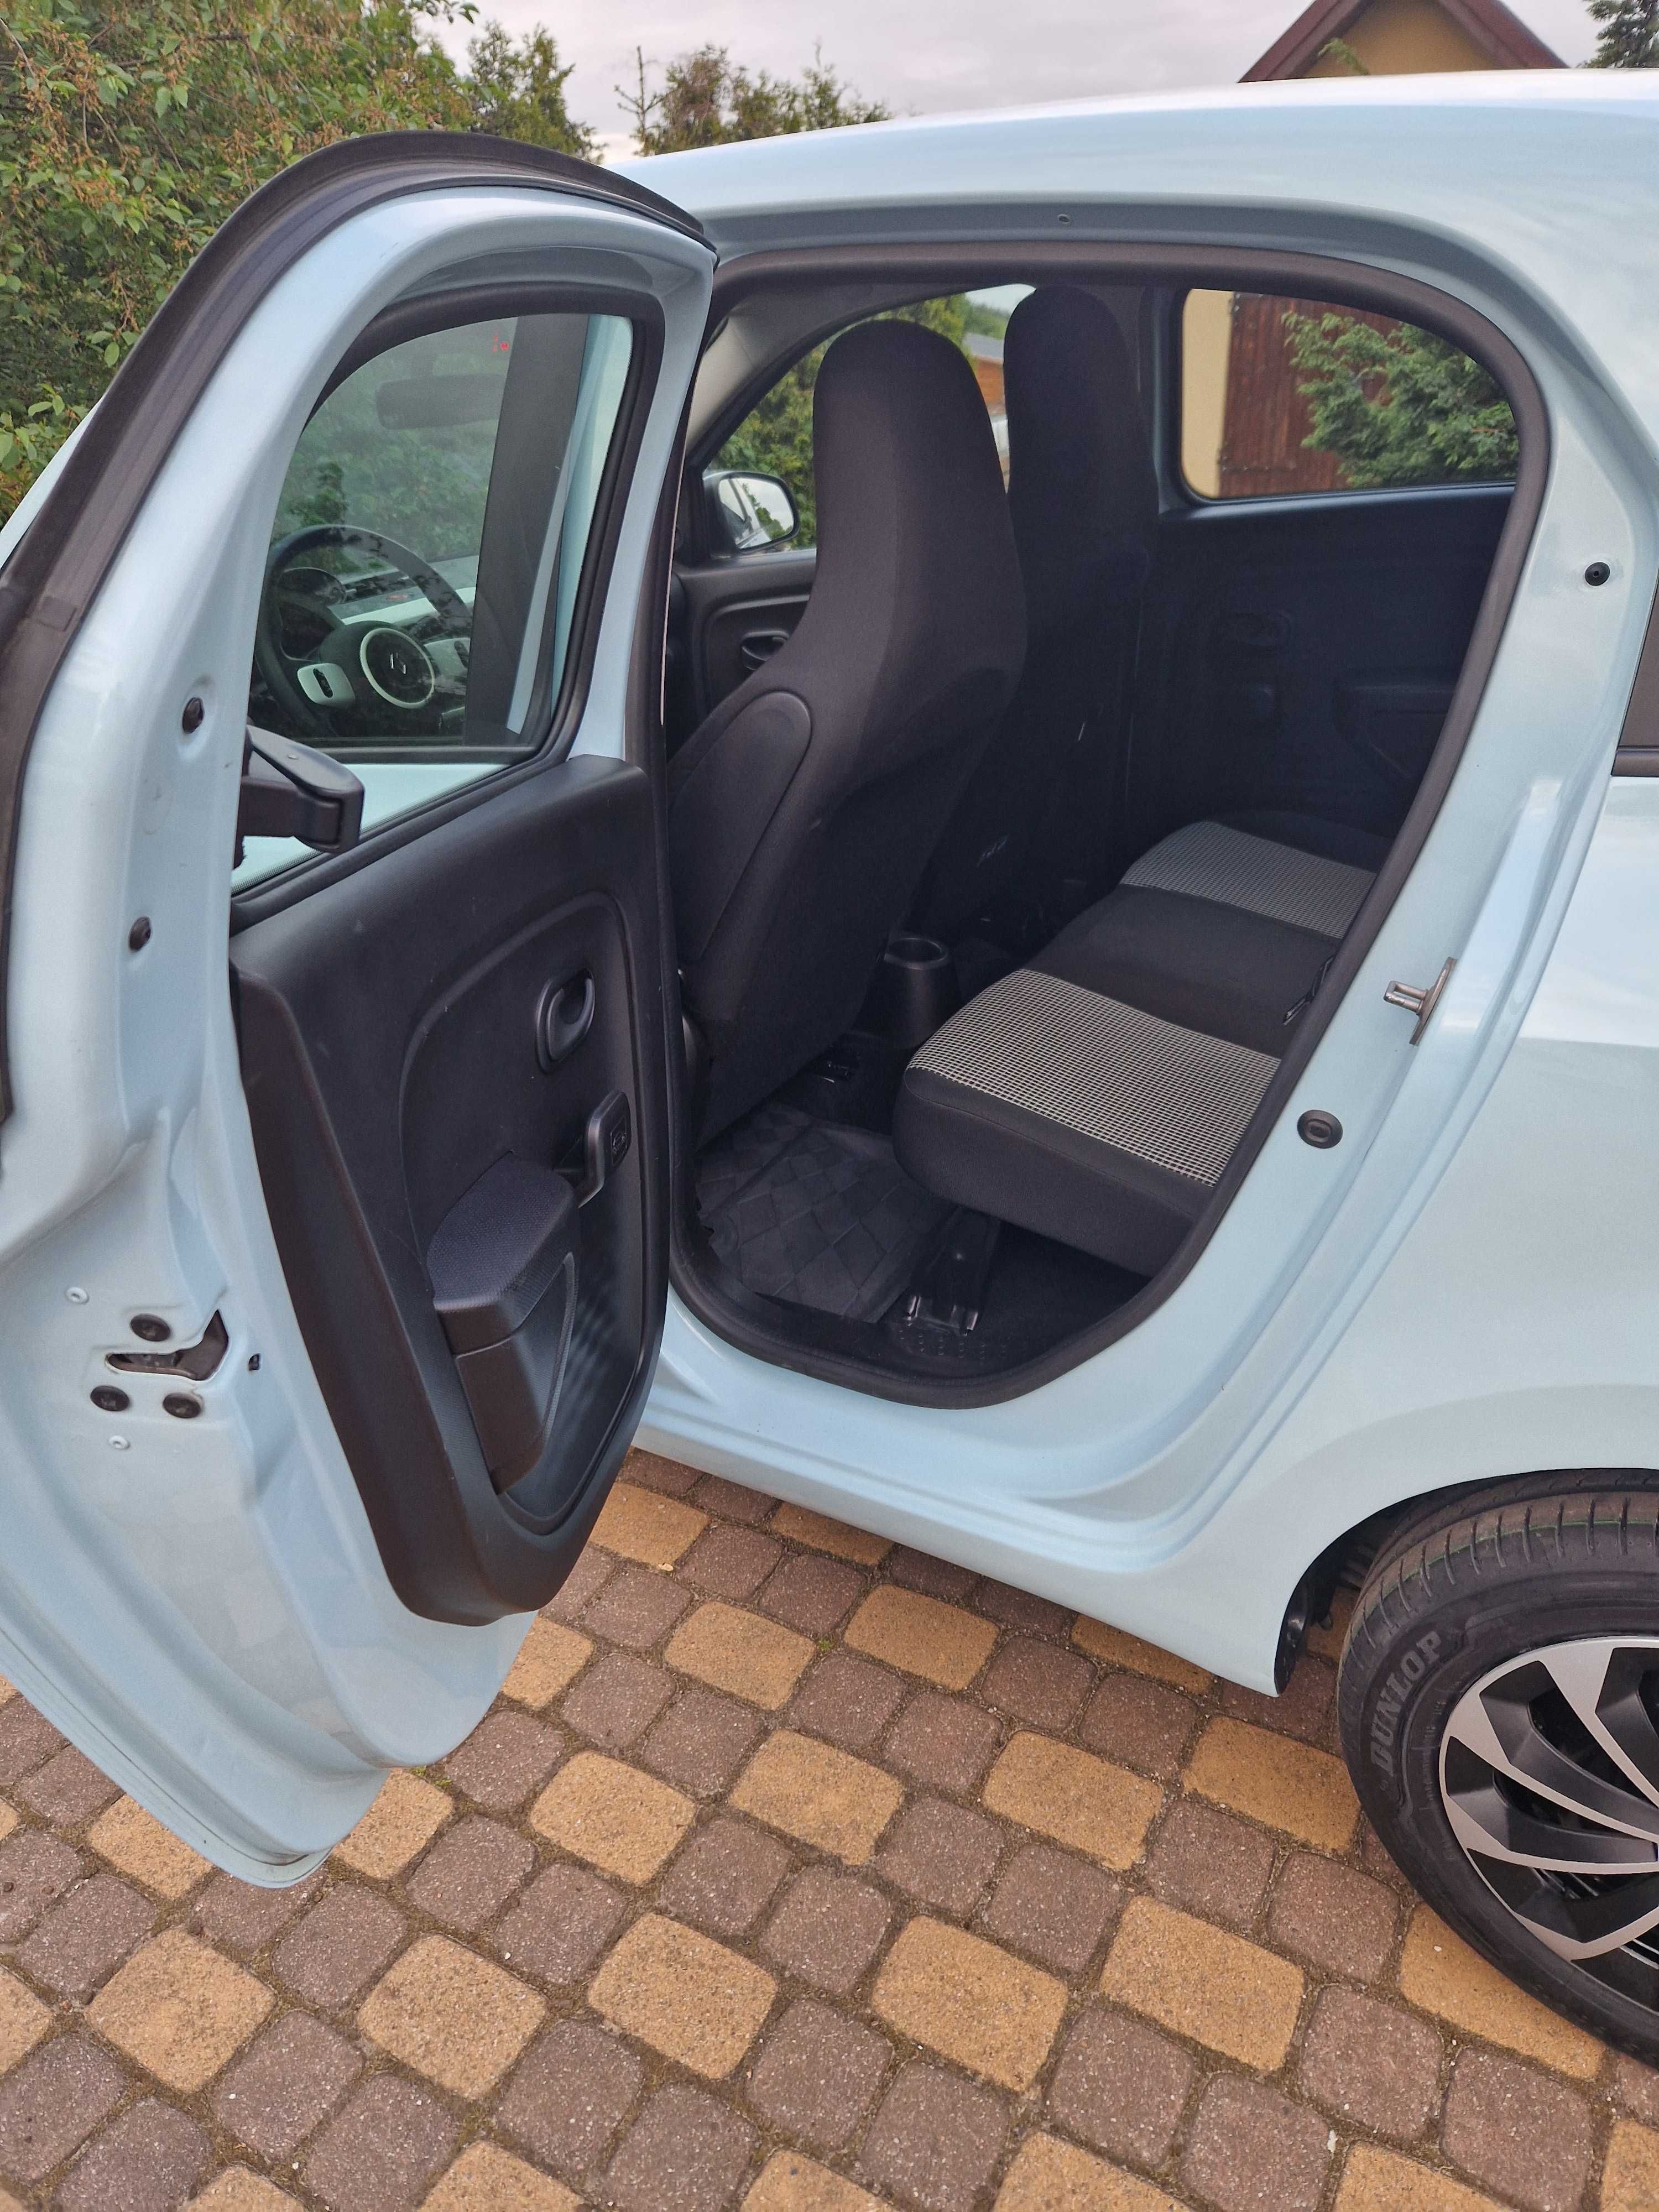 Renault Twingo 1,0 cm3 rok 2017, 4 drzwi, 74tyś.km